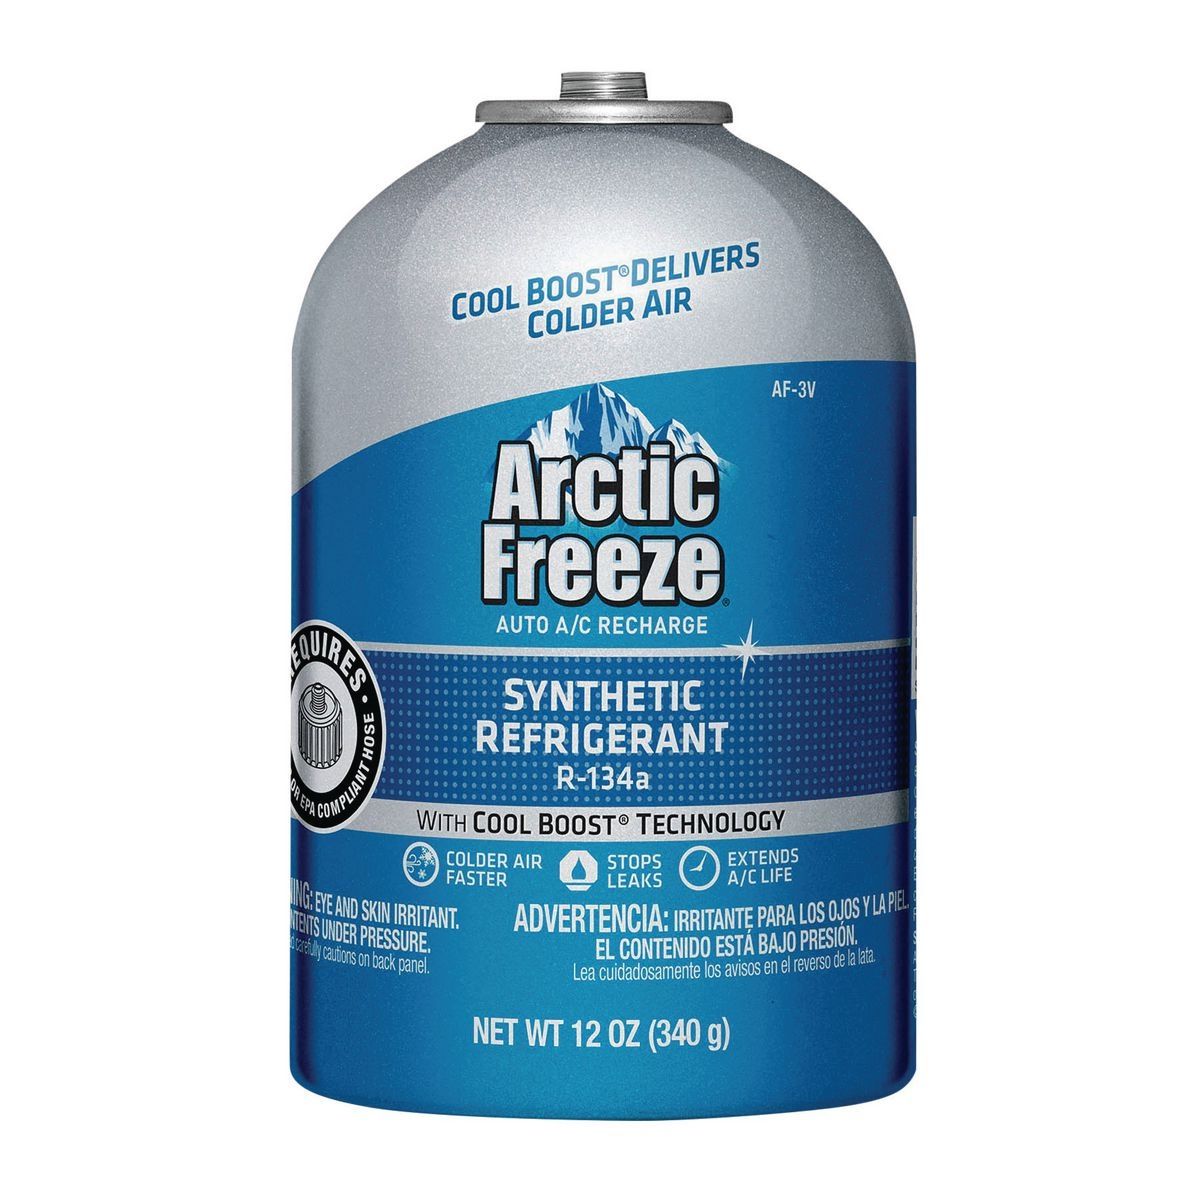 ARCTIC FREEZE 12 oz. Refrigerant